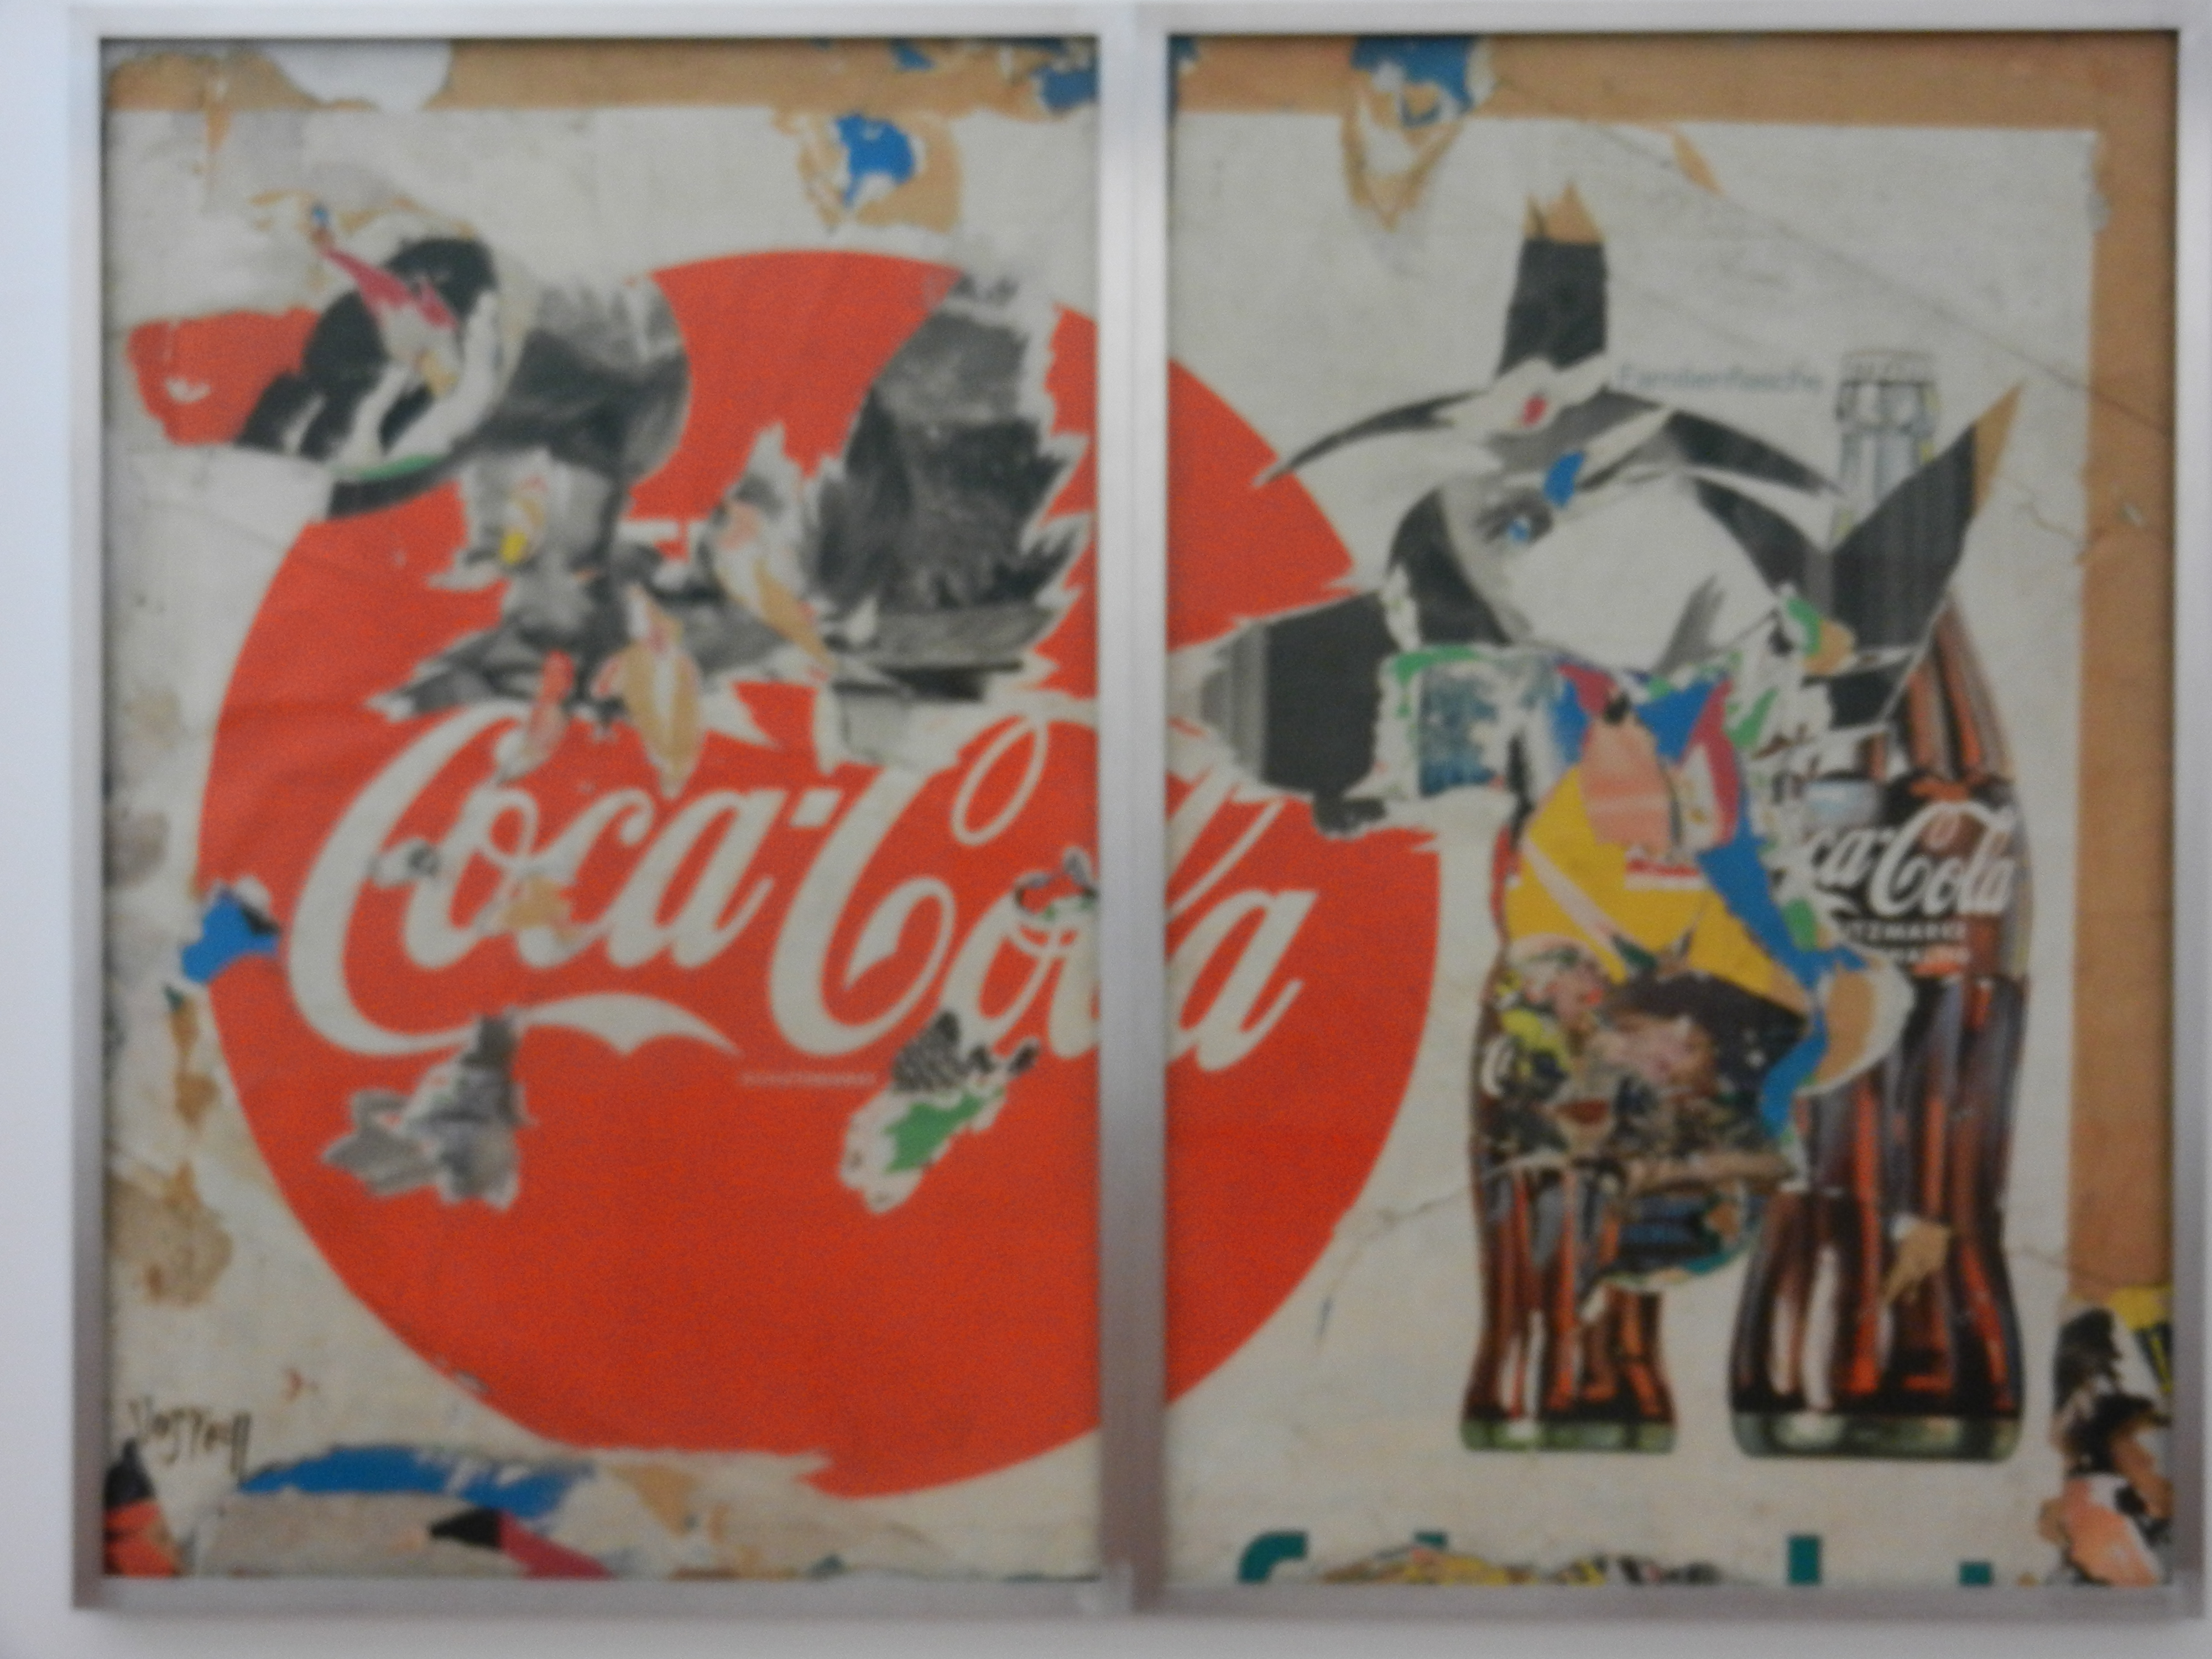 Wolf Vostell: Coca Cola, 1961